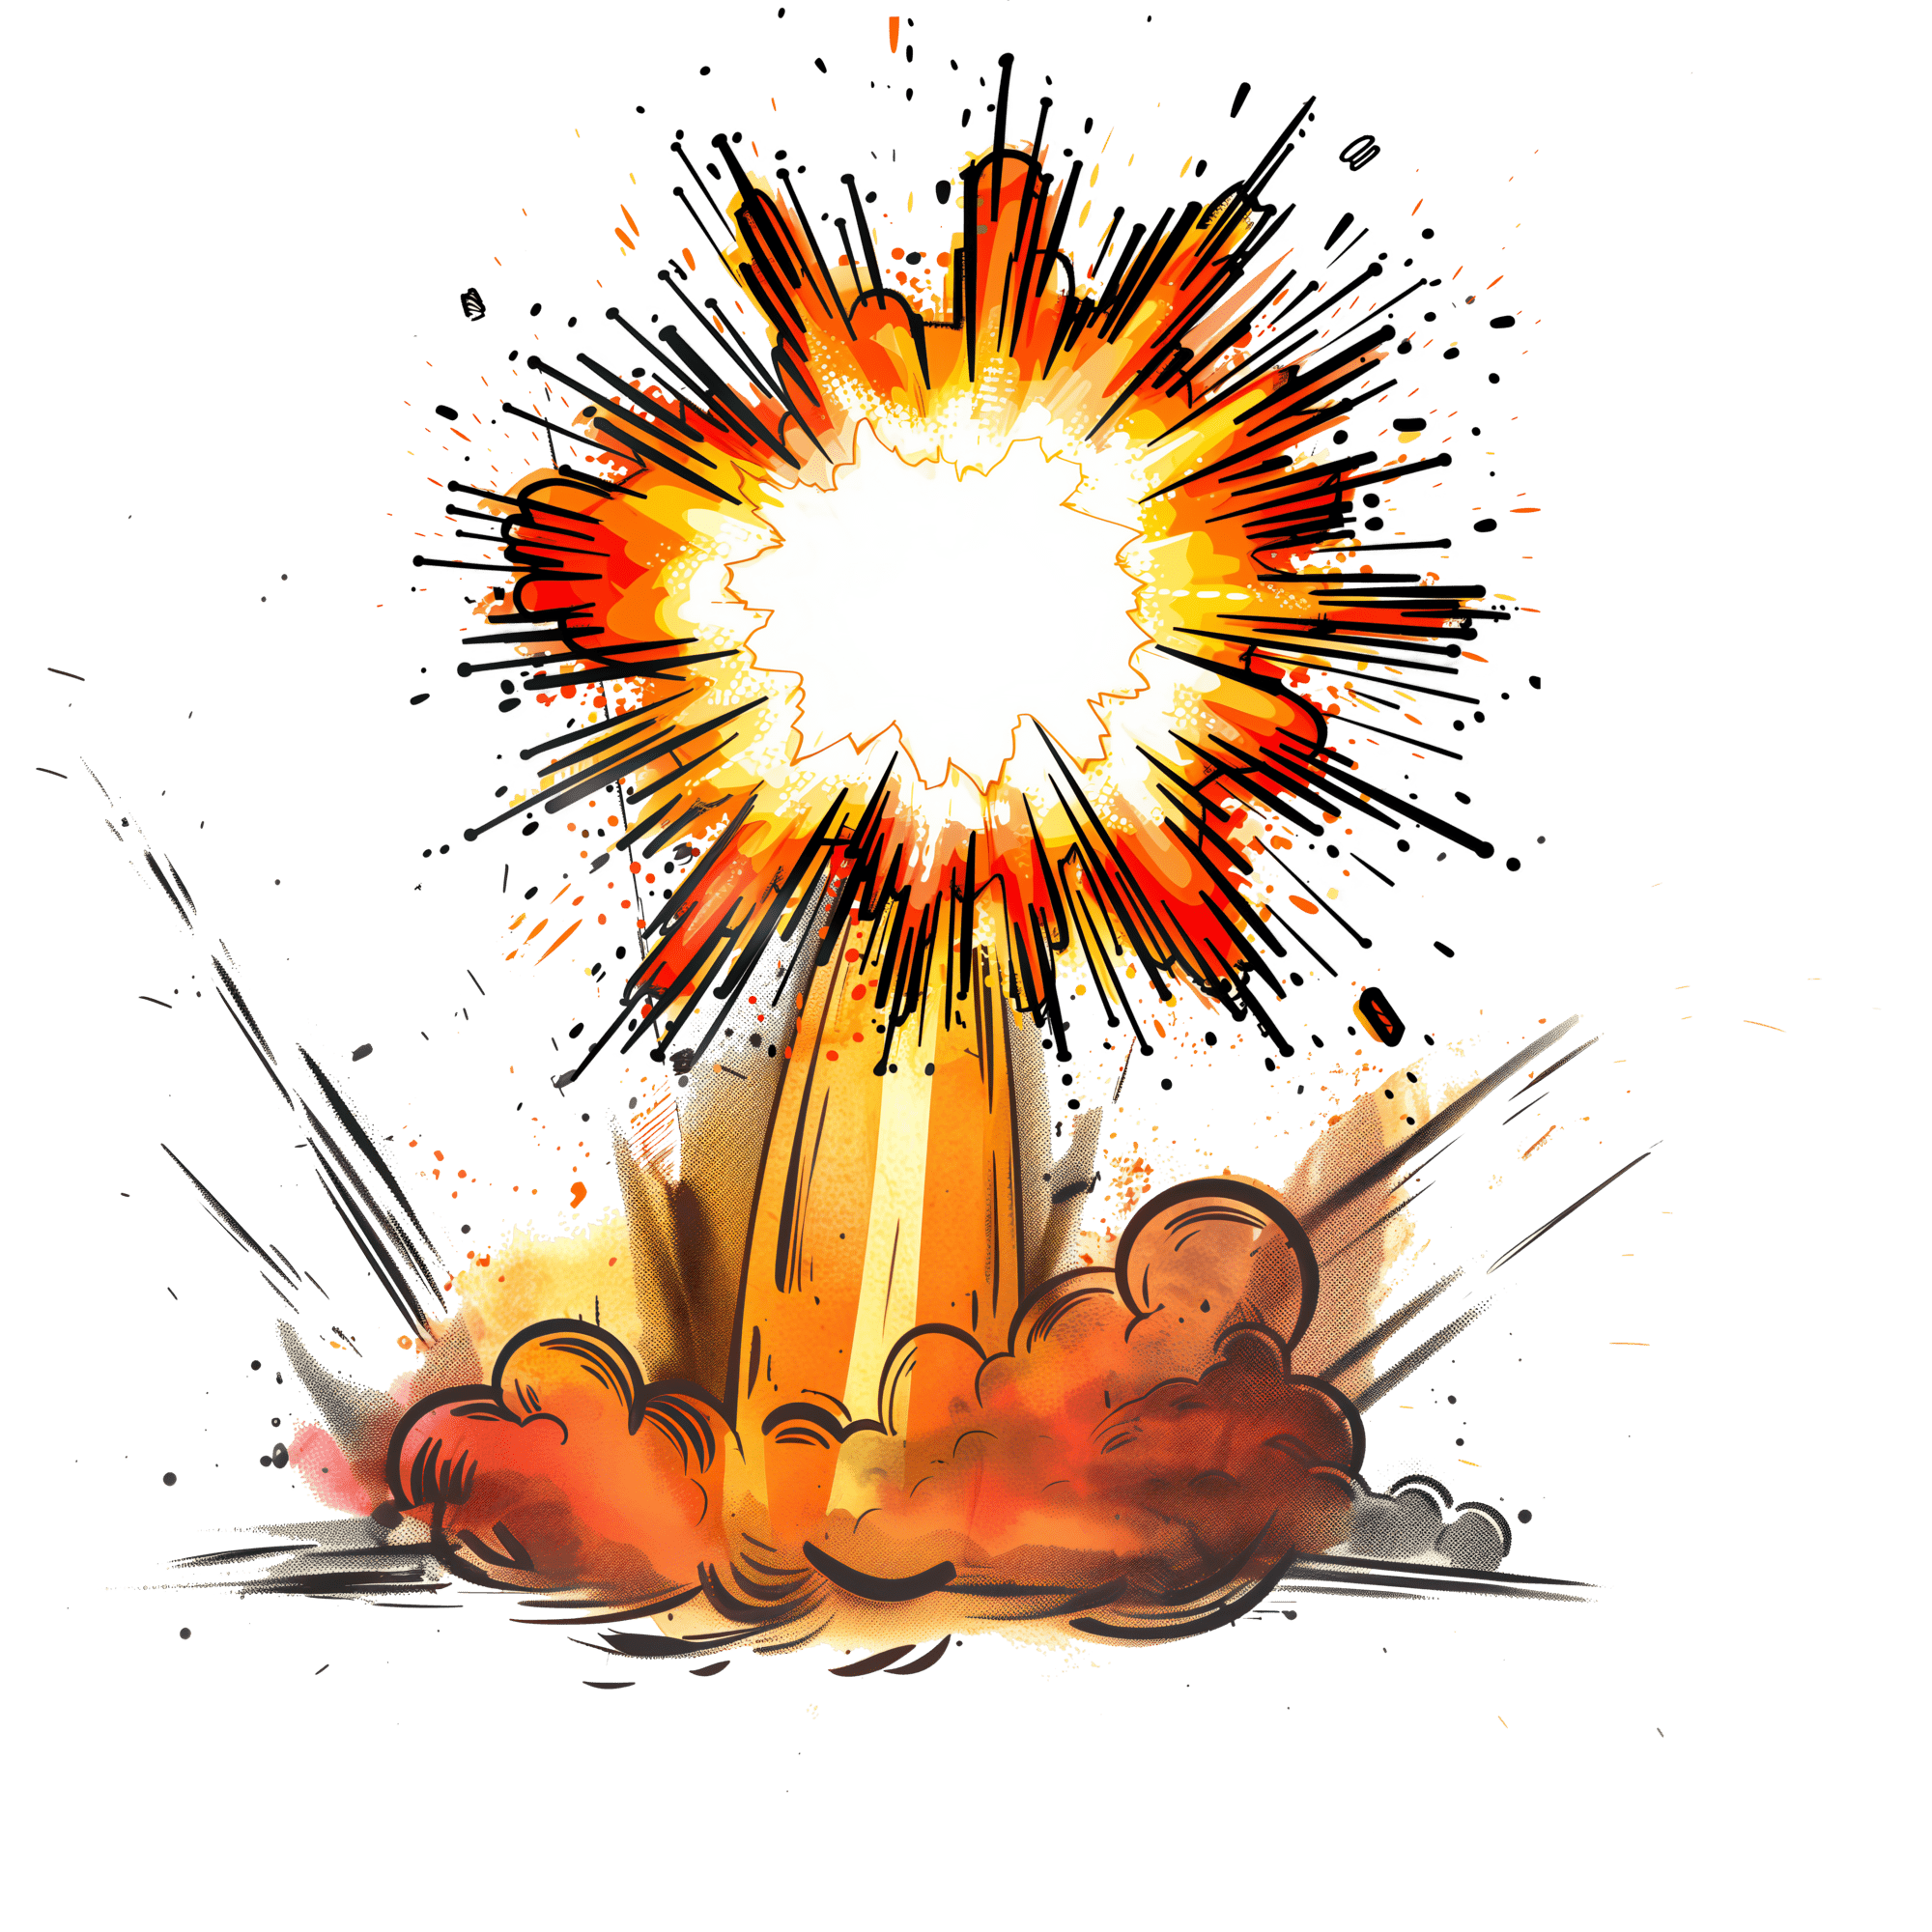 Rocket Test Explosion